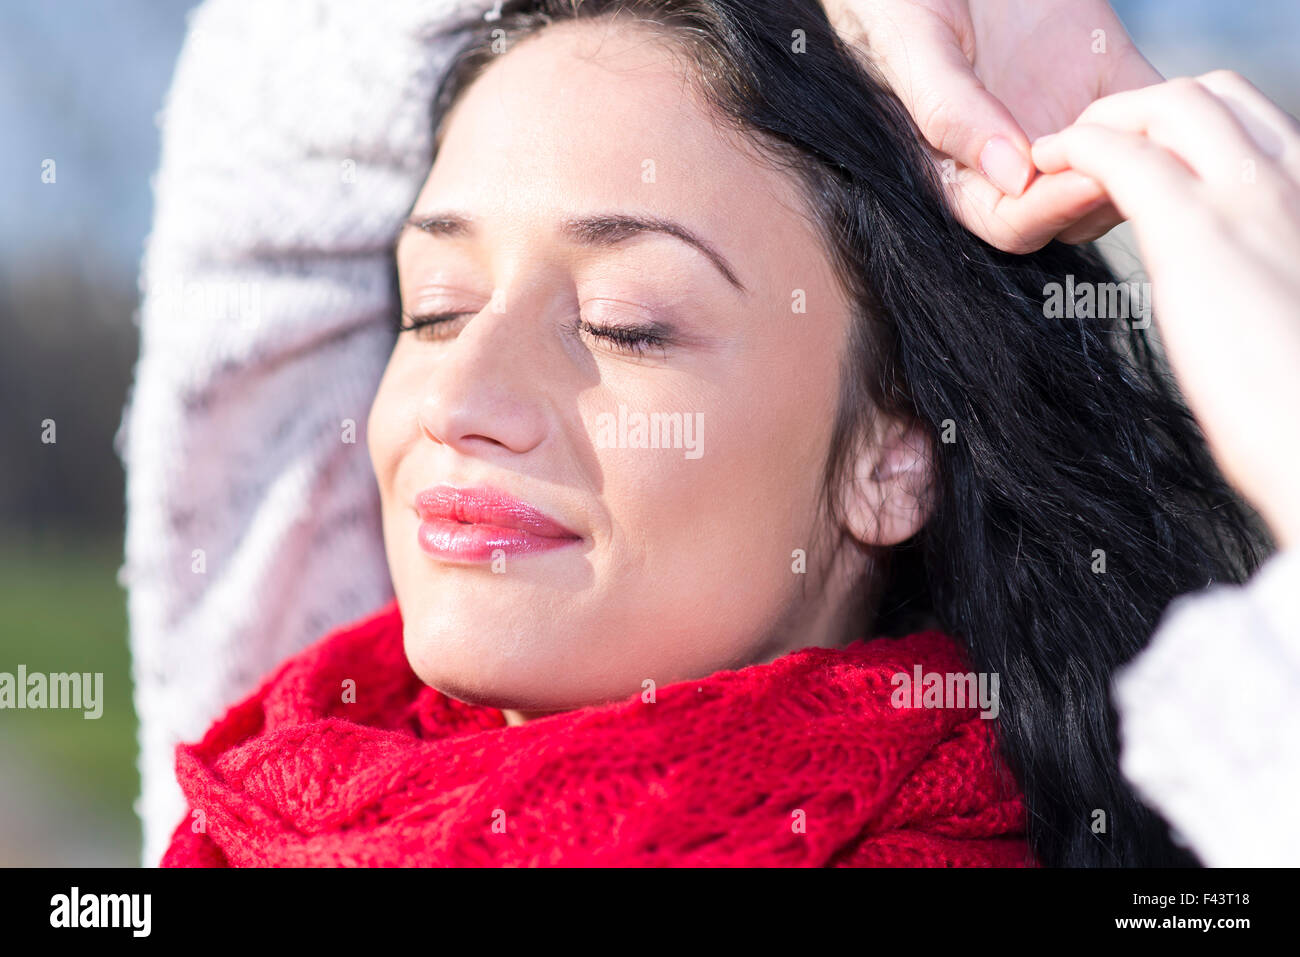 Giovane donna con sciarpa rossa Foto Stock